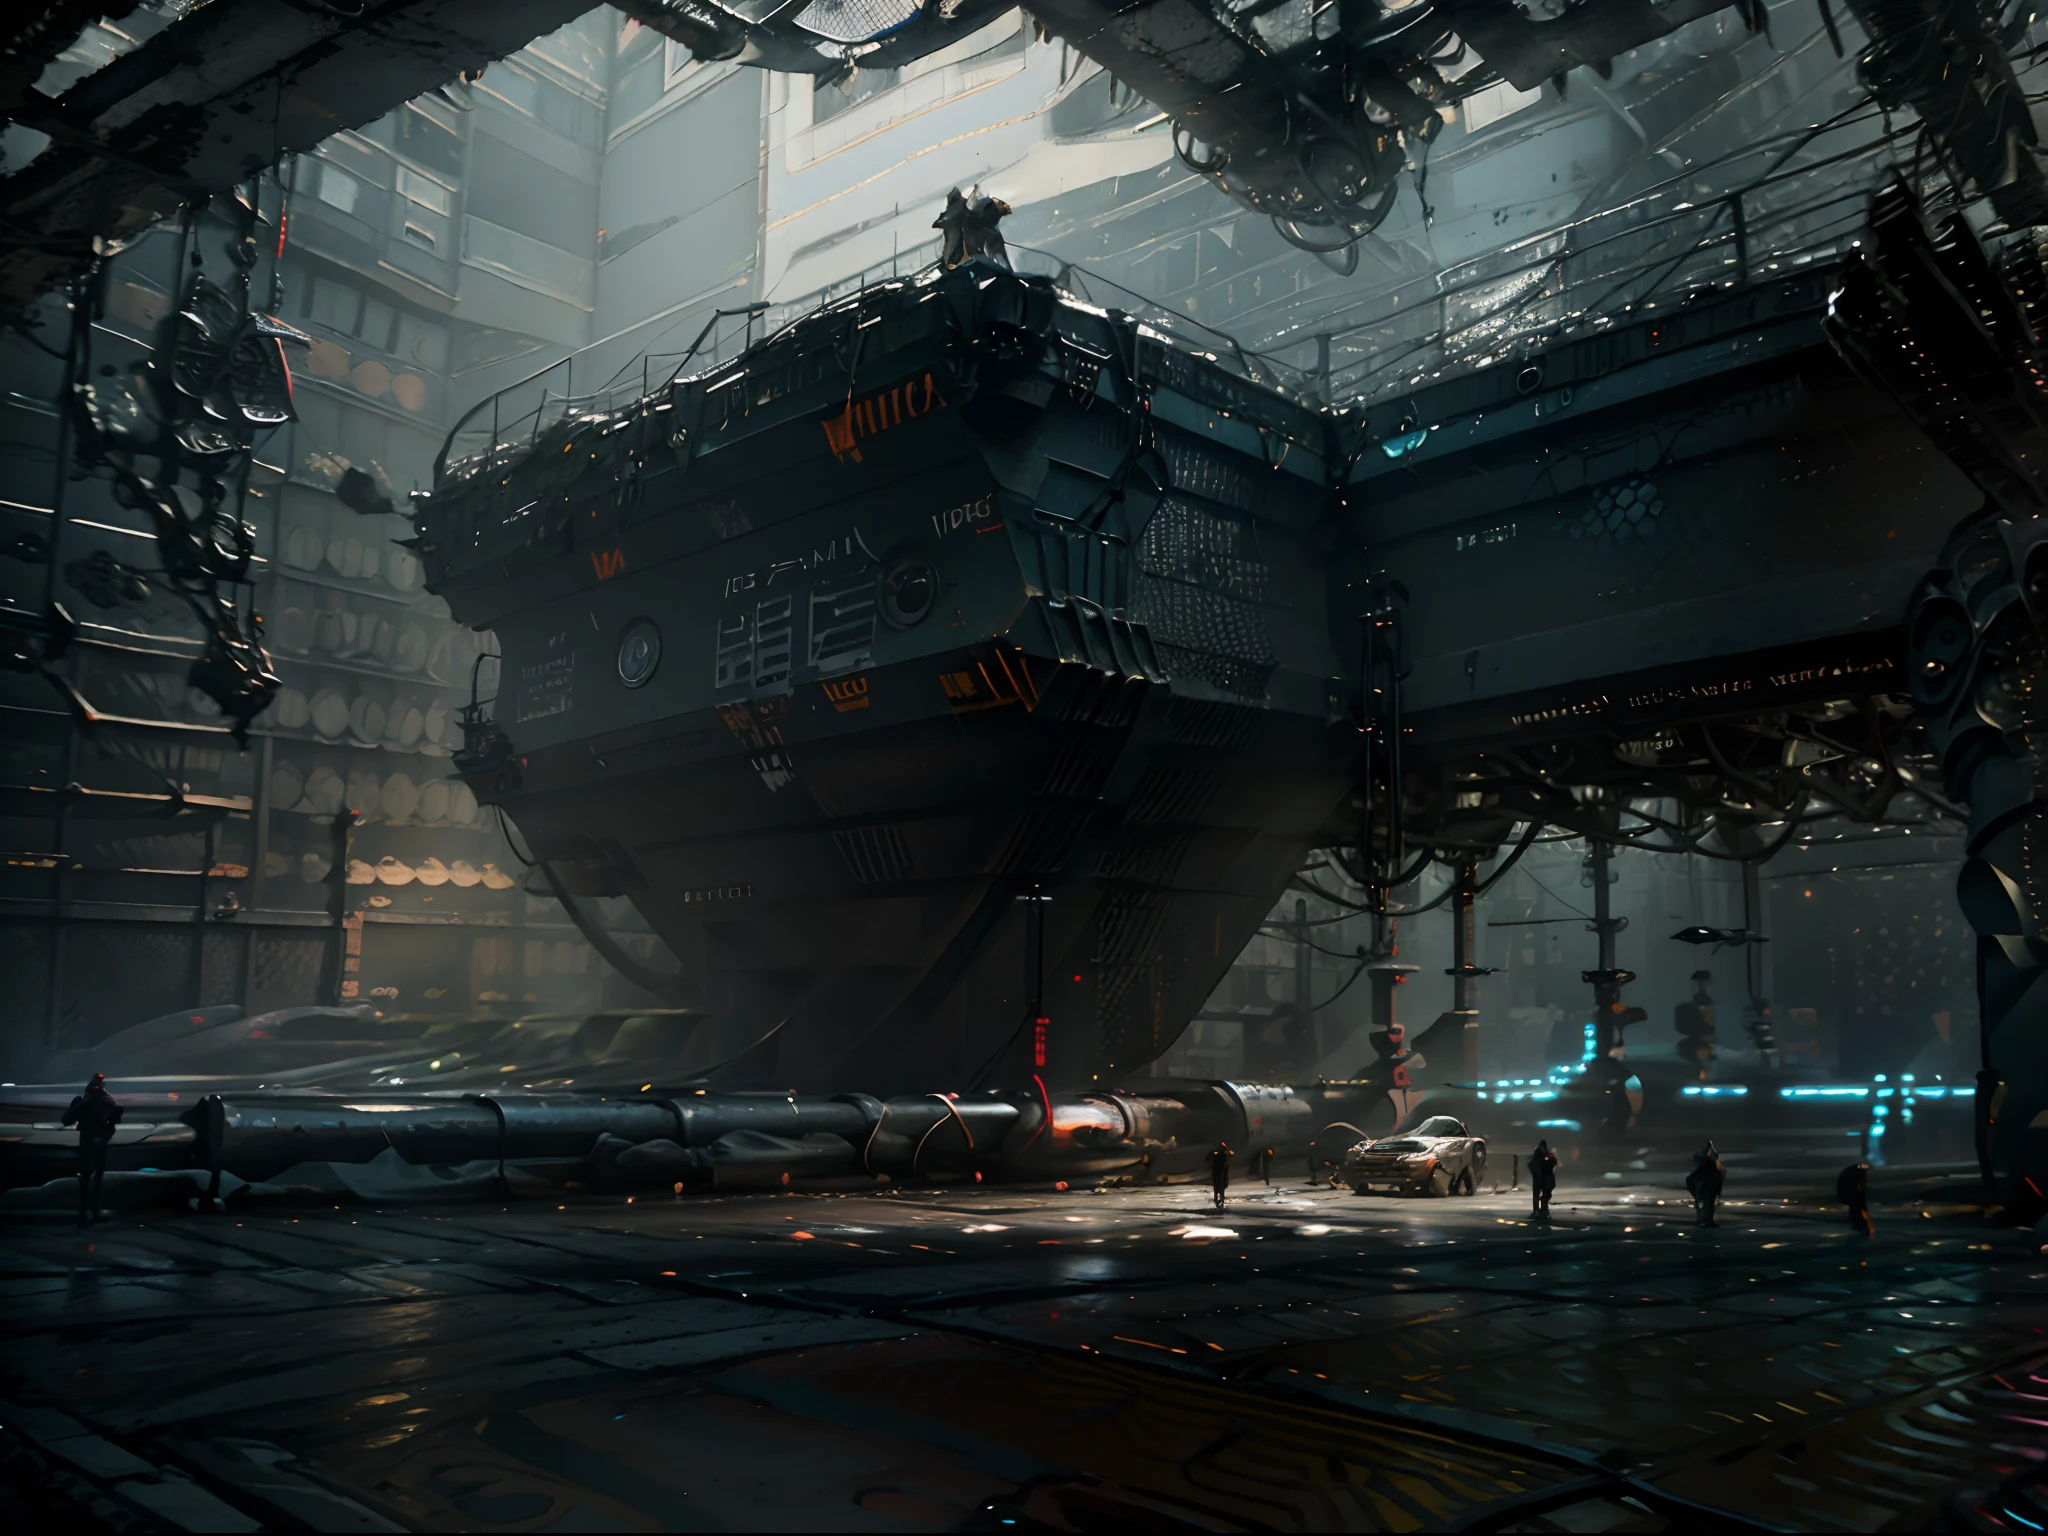 مناظر مدينة Cyberpunk مع ناطحات السحاب الشاهقة, لوحات ضوئية, والسيارات الطائرة.